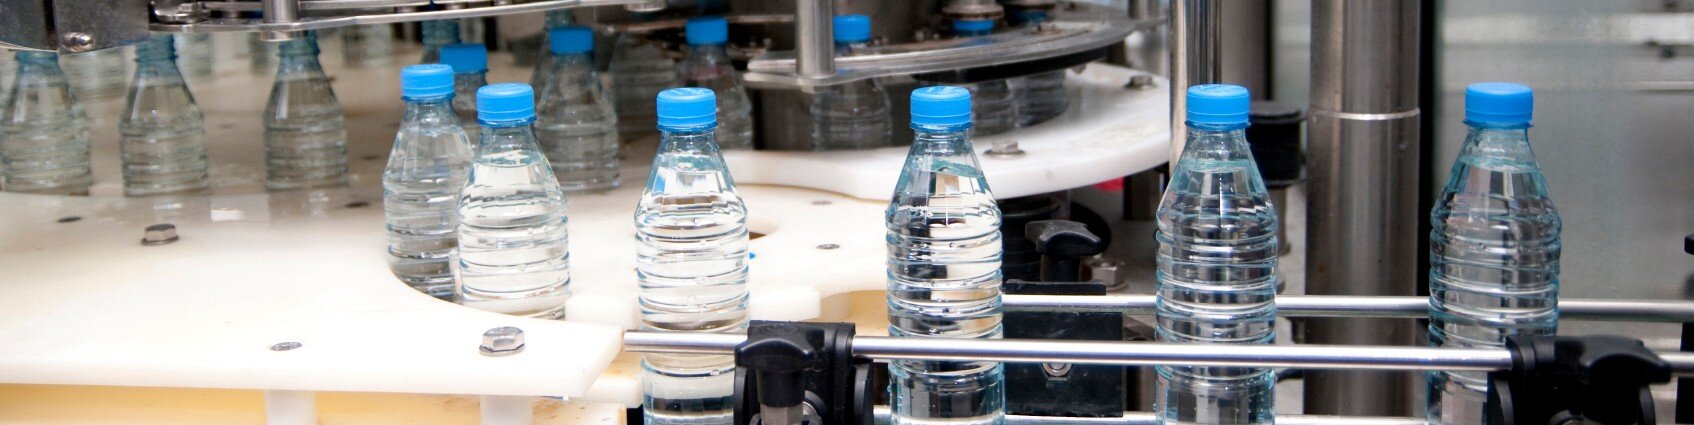 Компания Donaldson помогает производителю минеральной воды избежать дорогостоящих простоев